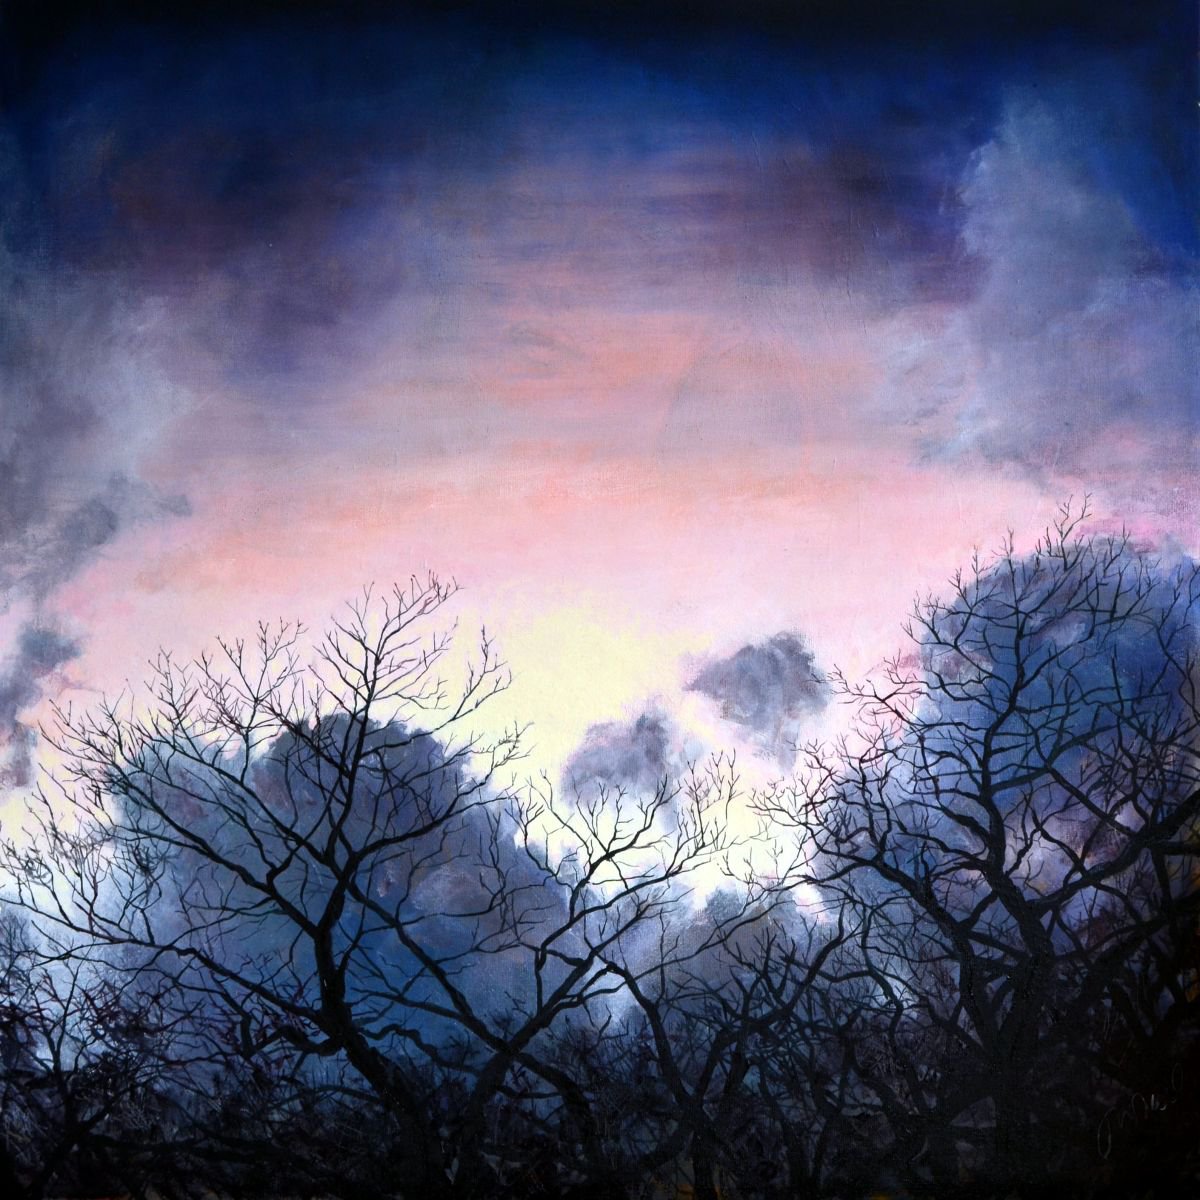 Evening Winter Sky by JON PAUL WILSON